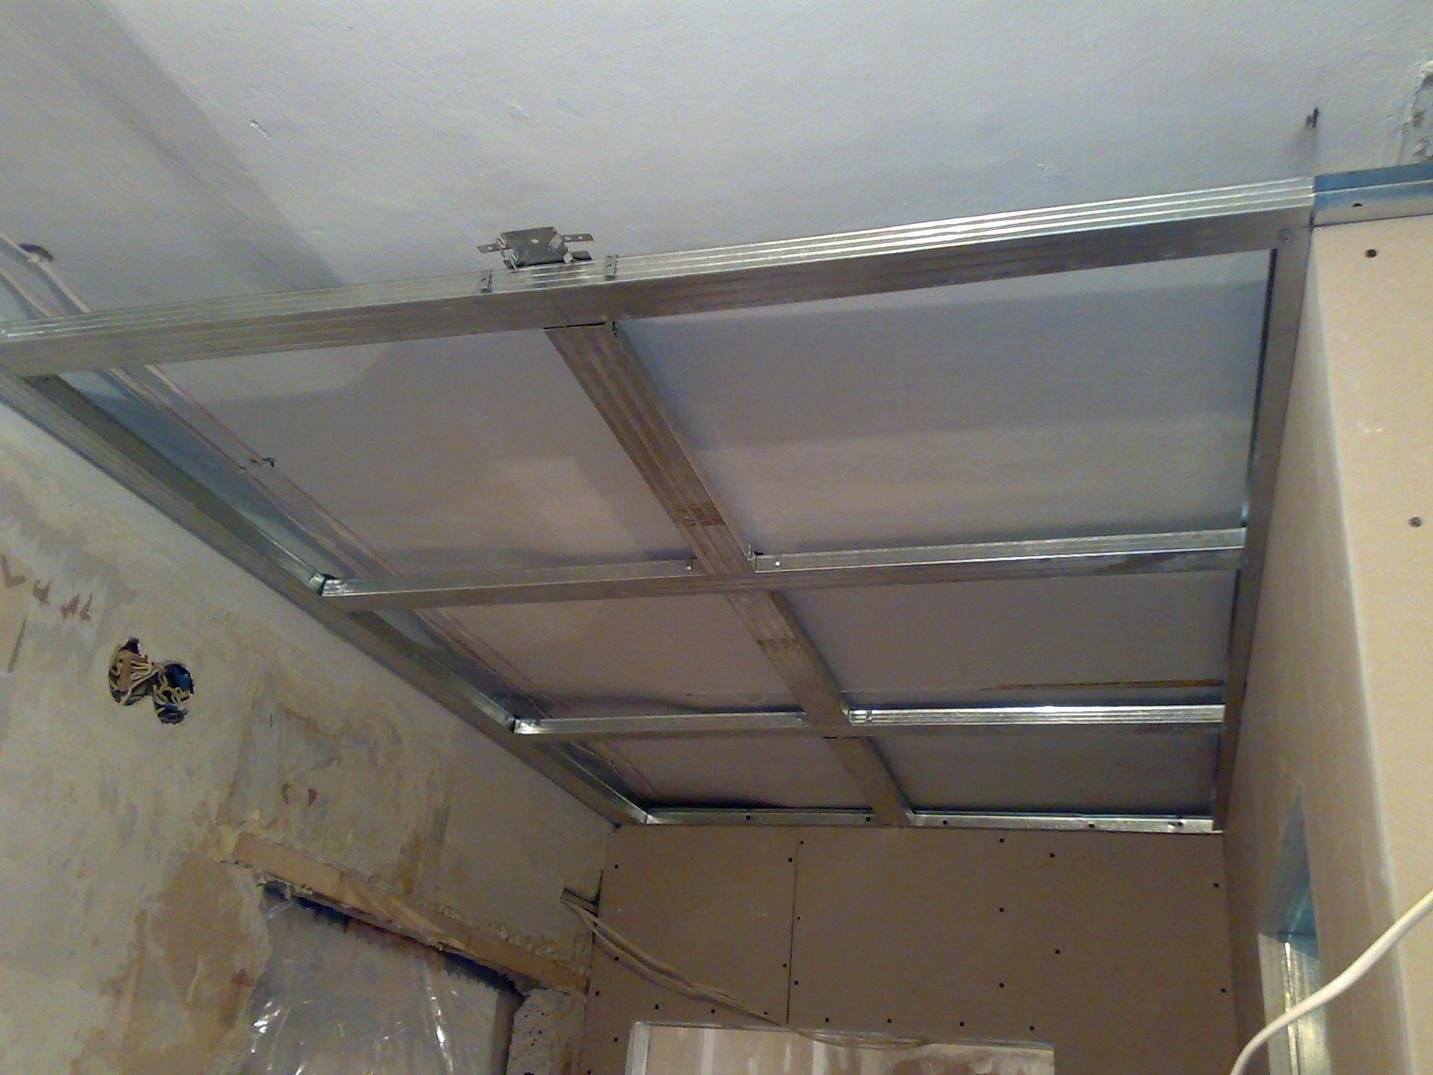 Подвесной потолок в ванной комнате: как сделать навесной потолок для ванной своими руками, что можно сделать с потолком, установка подвесного потолка, как и из чего можно сделать